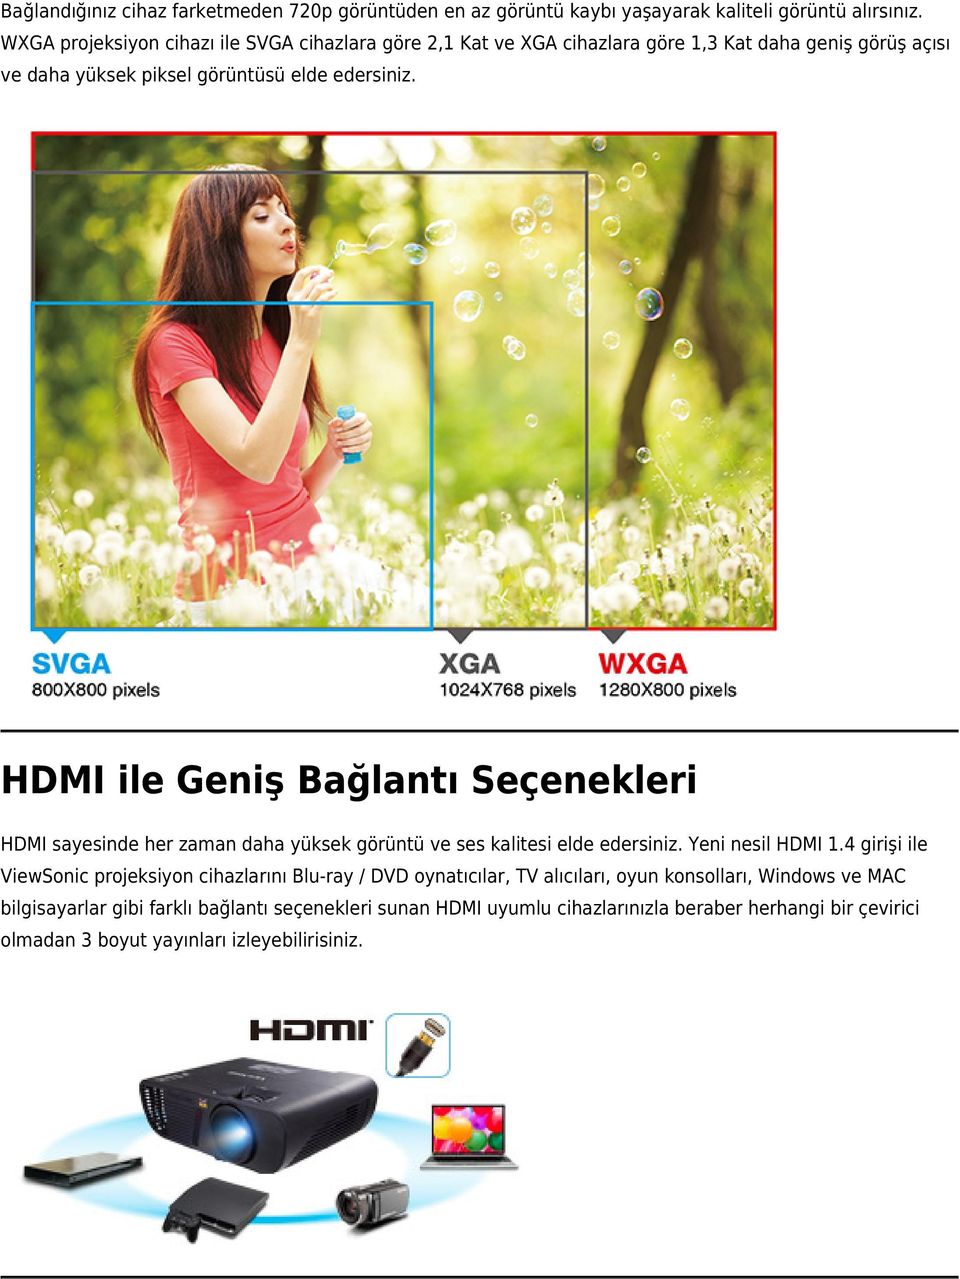 HDMI ile Geniş Bağlantı Seçenekleri HDMI sayesinde her zaman daha yüksek görüntü ve ses kalitesi elde edersiniz. Yeni nesil HDMI 1.